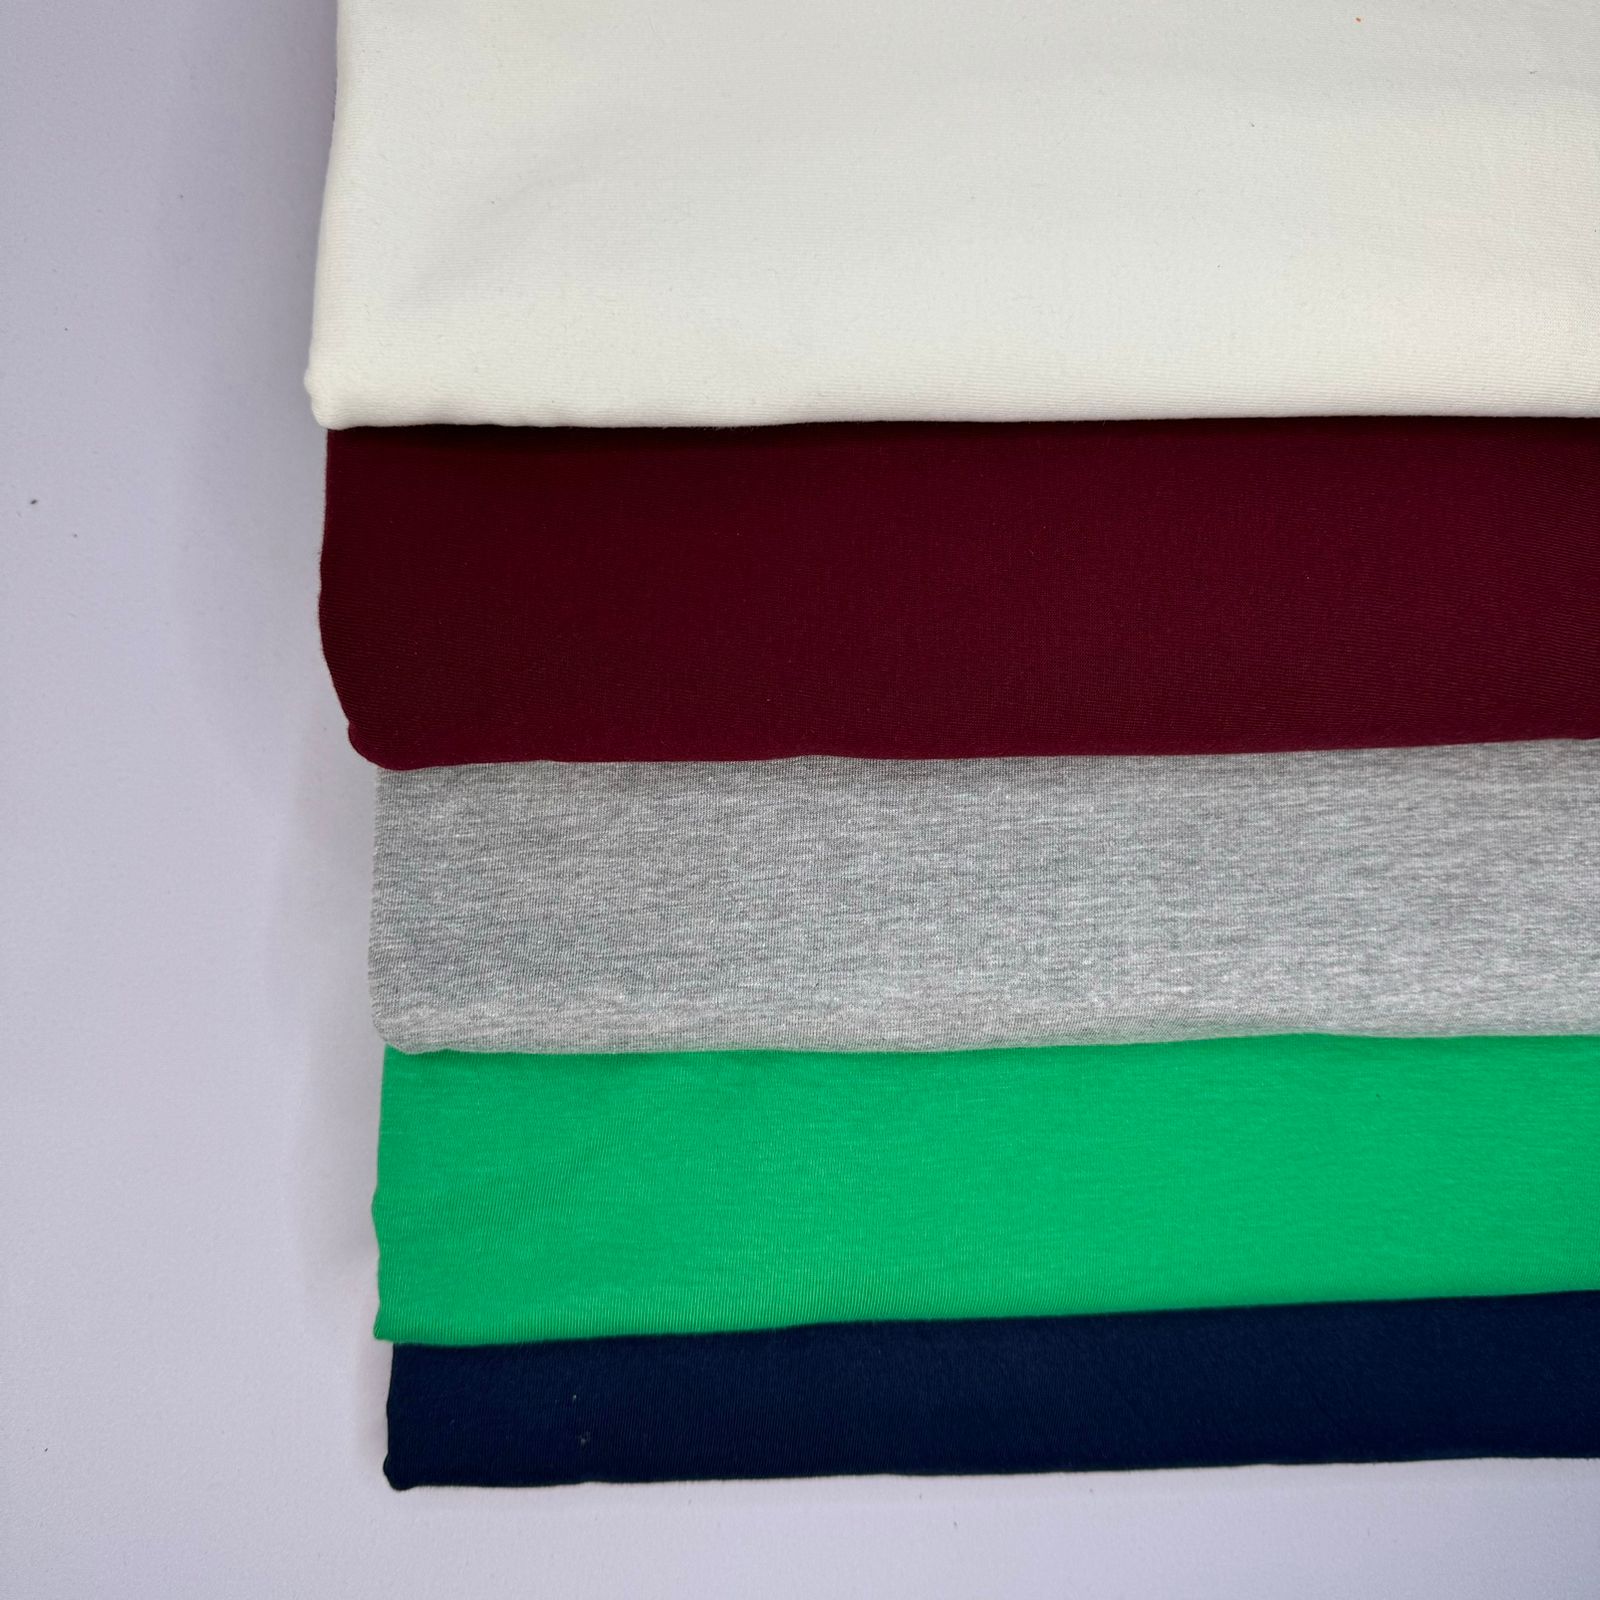 Tecido malha algodão 5 cores 100% algodão kit com 3,18 kg aprox. 10,81 m